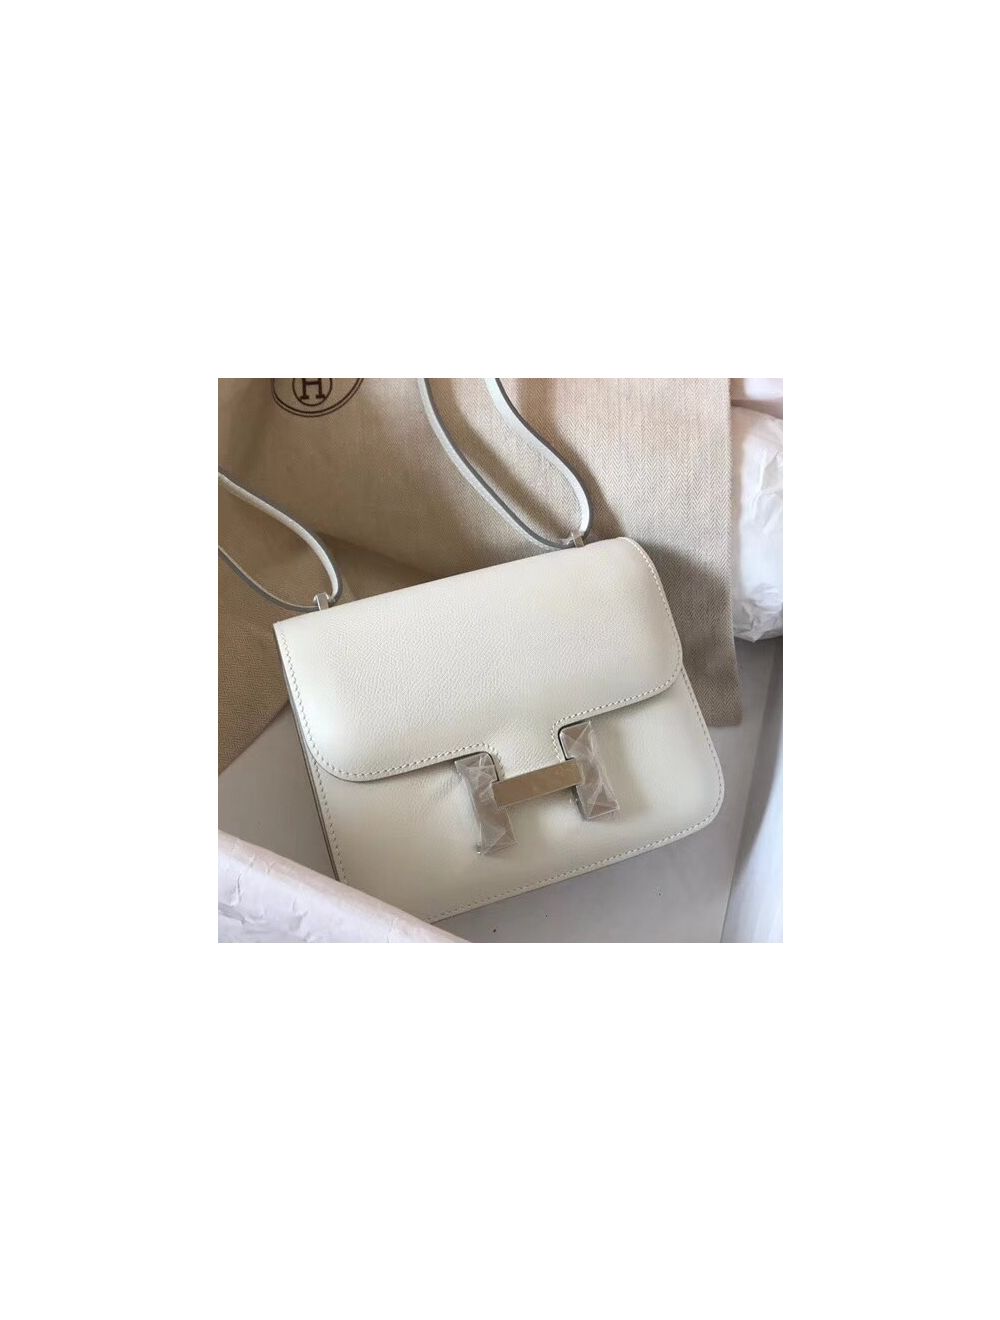 Hermes Constance Mini Bag Epsom Leather Gold Hardware In White